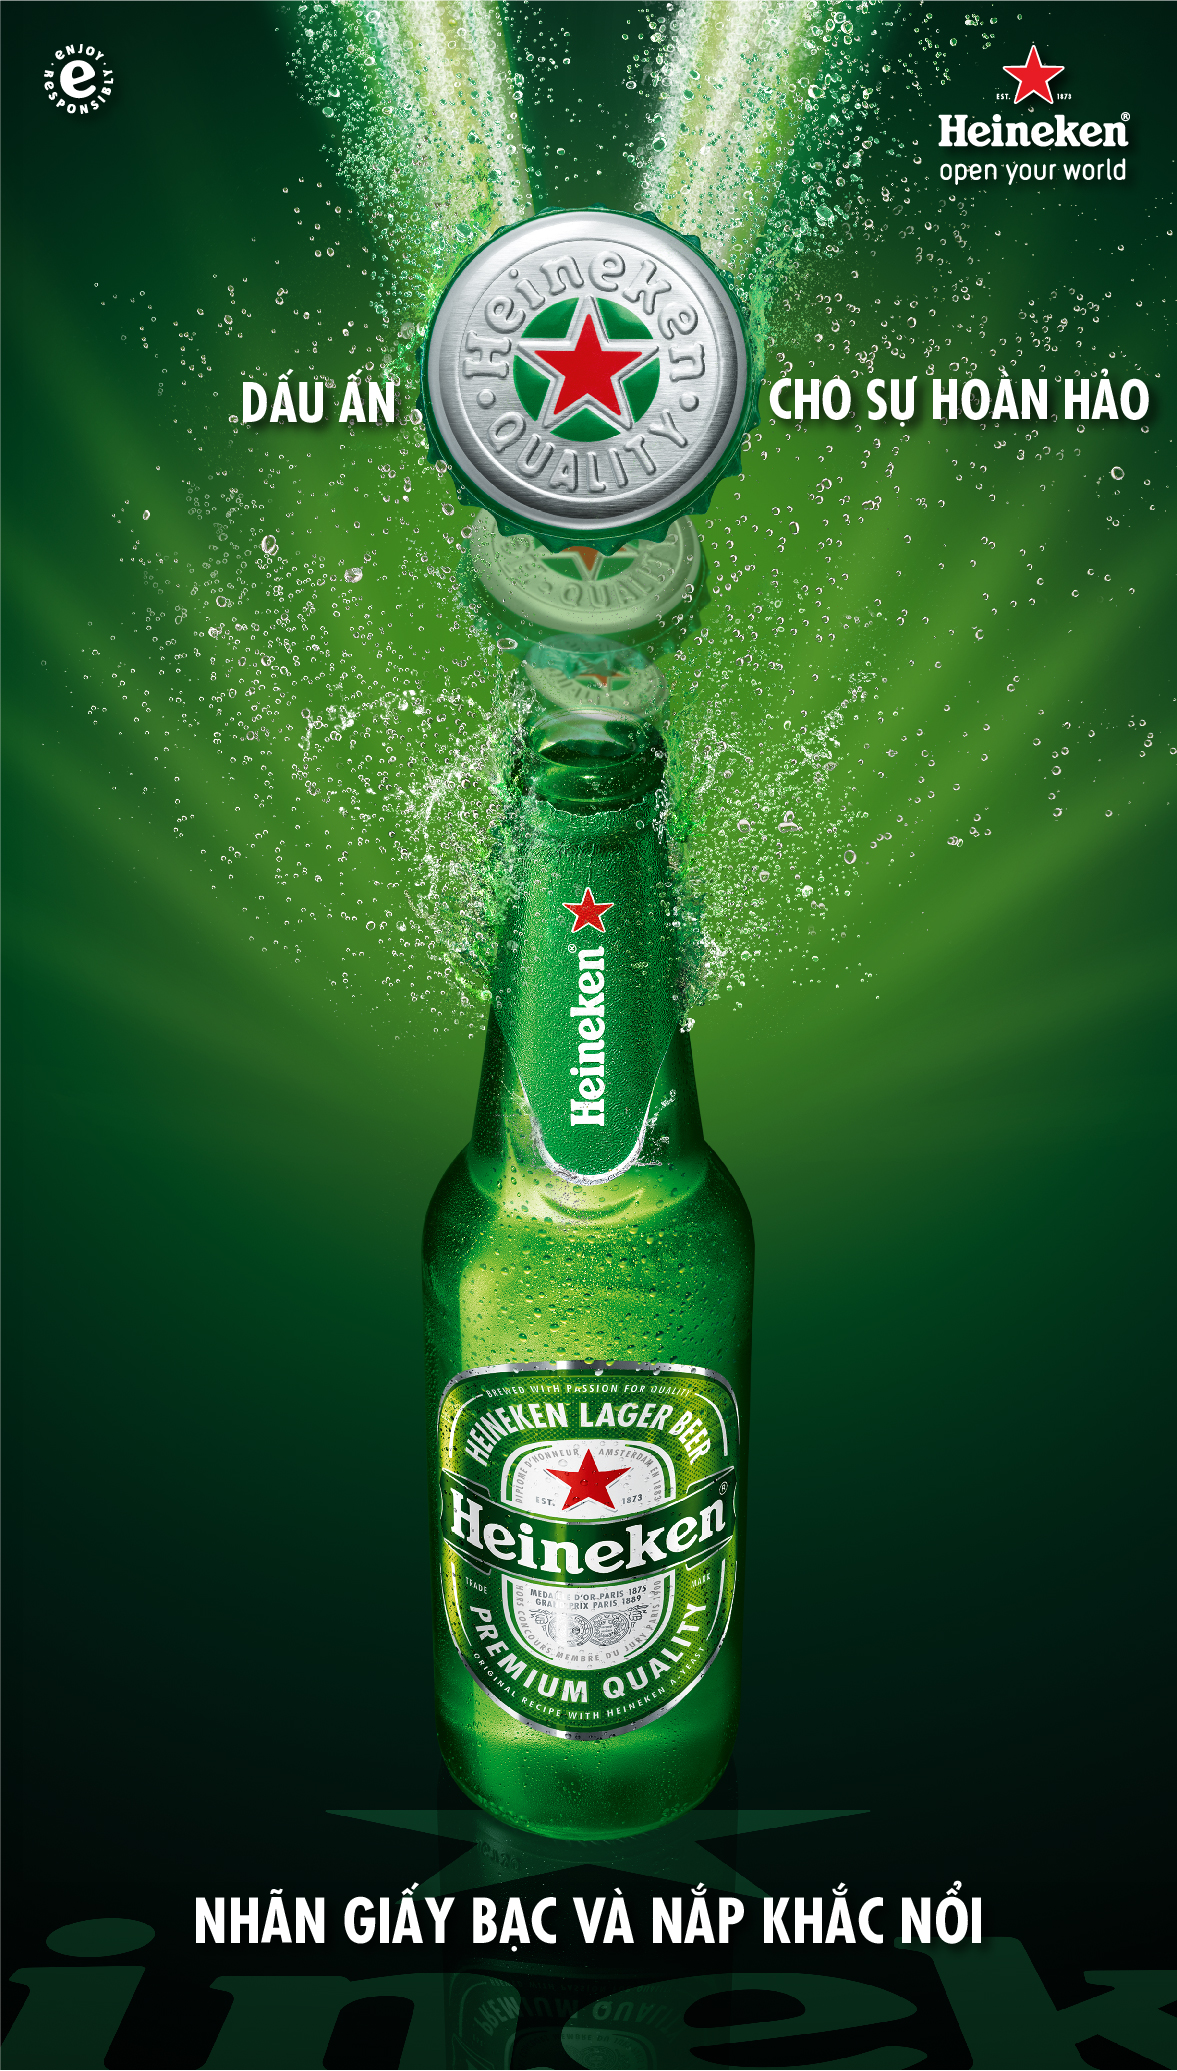 Chai Heineken "Dấu Ấn Của Sự Hoàn Hảo" luôn ấn tượng với người tiêu dùng